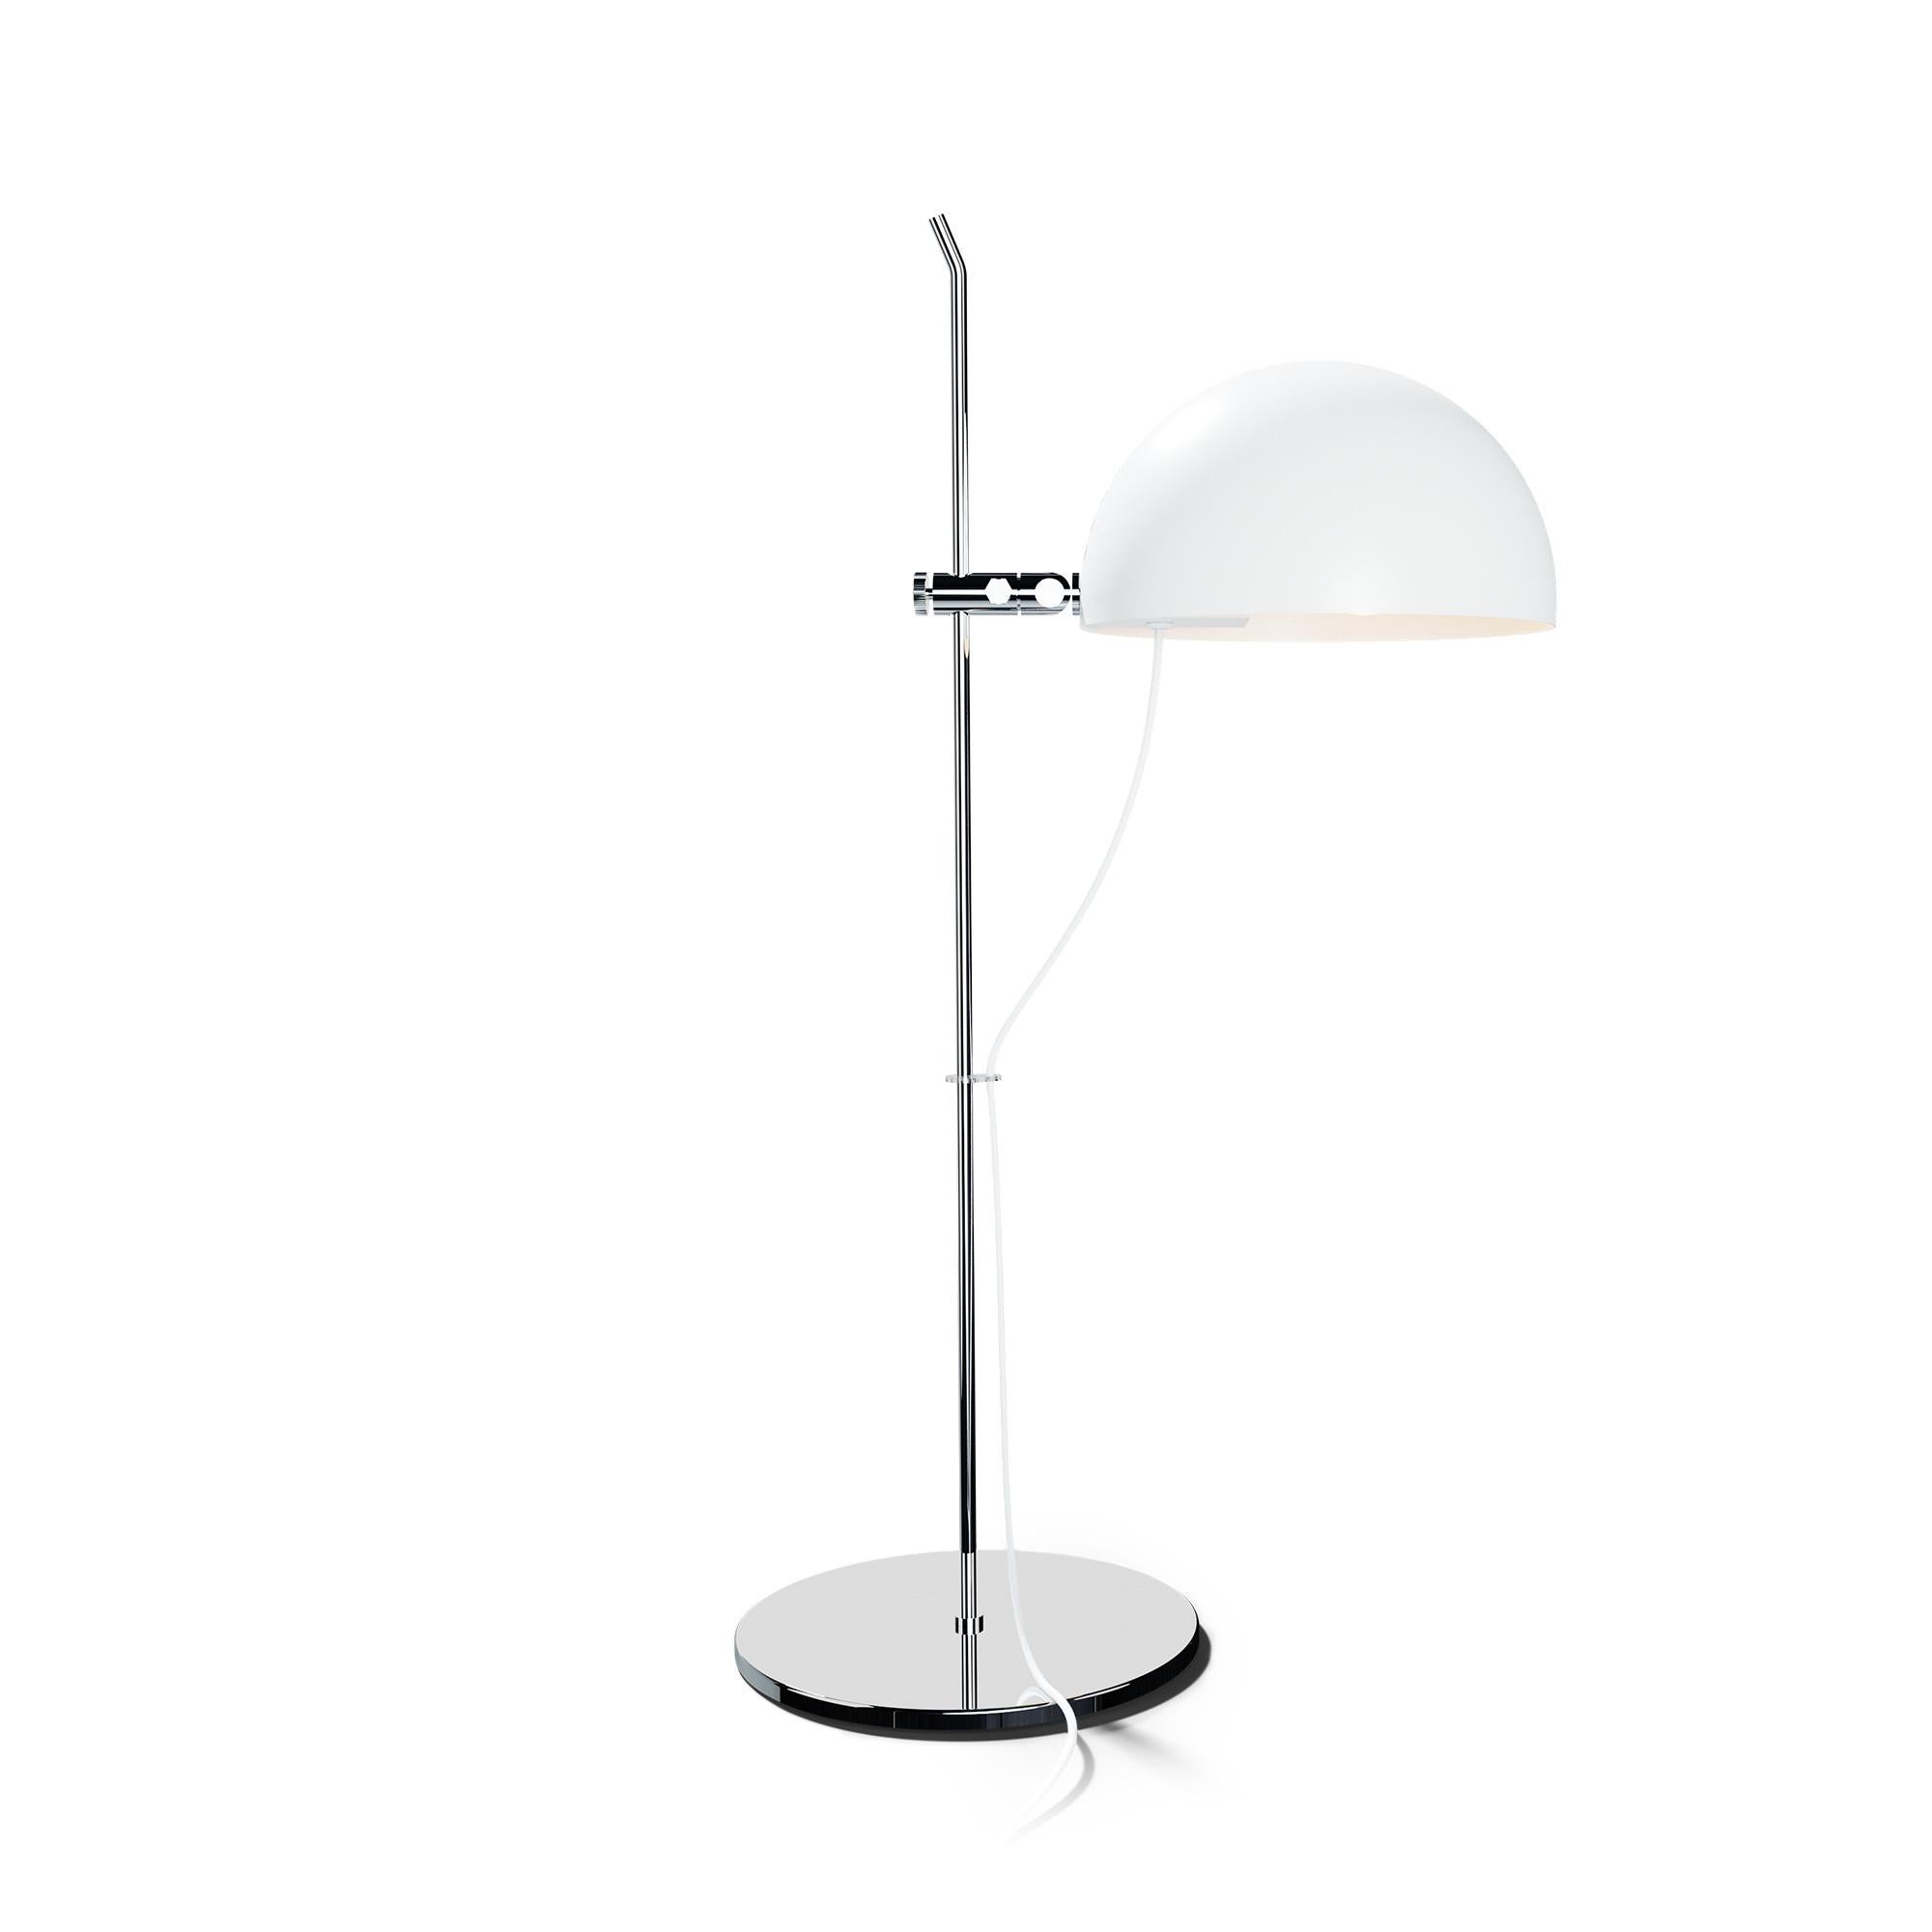 French Alain Richard 'A21' Desk Lamp in White for Disderot For Sale